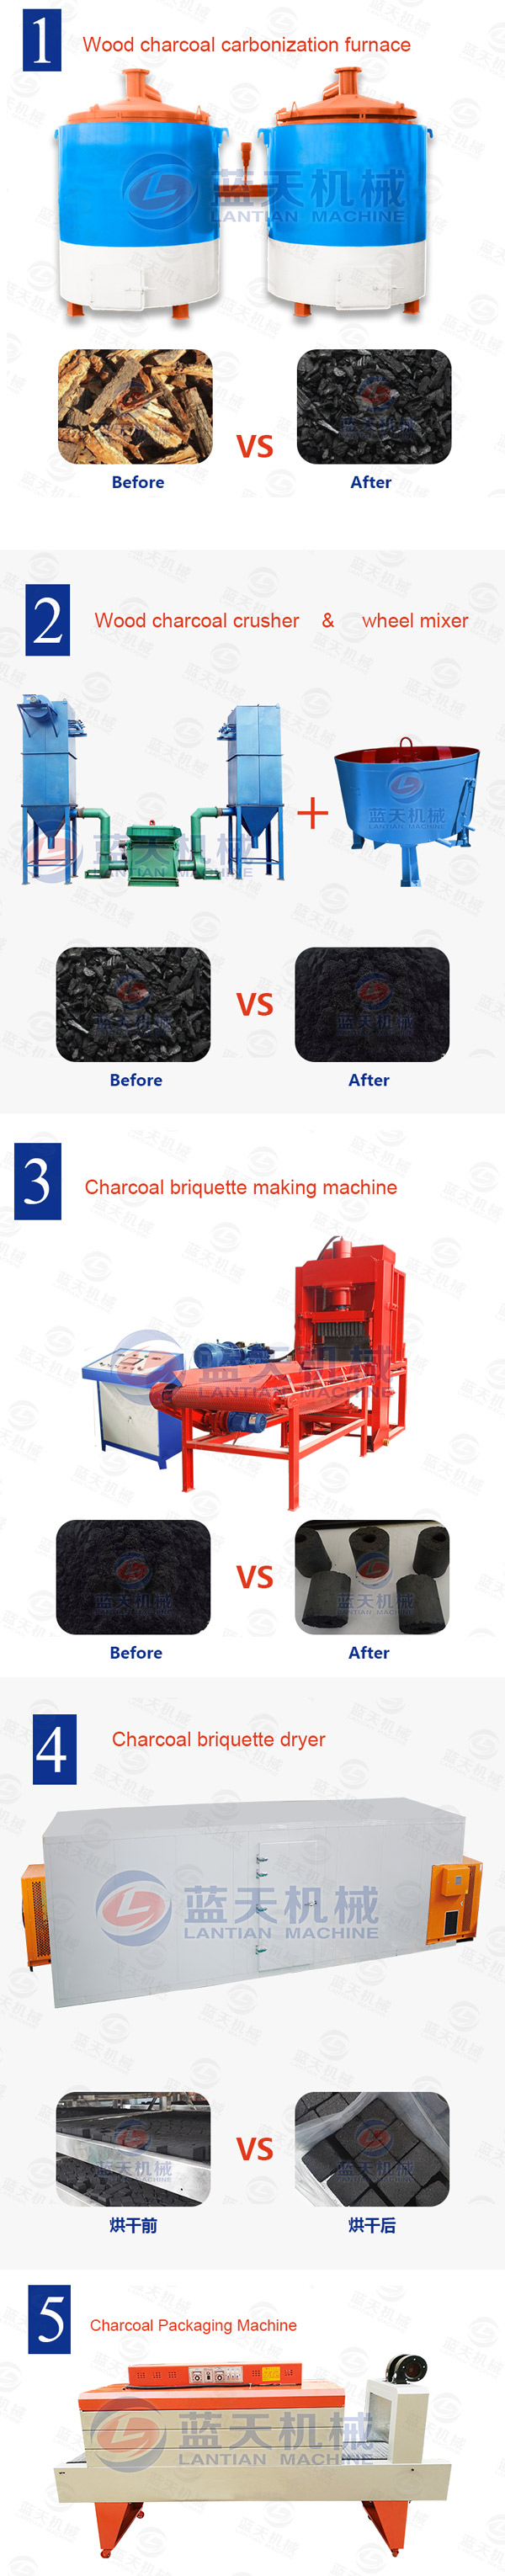 charcoal briquettes press machine